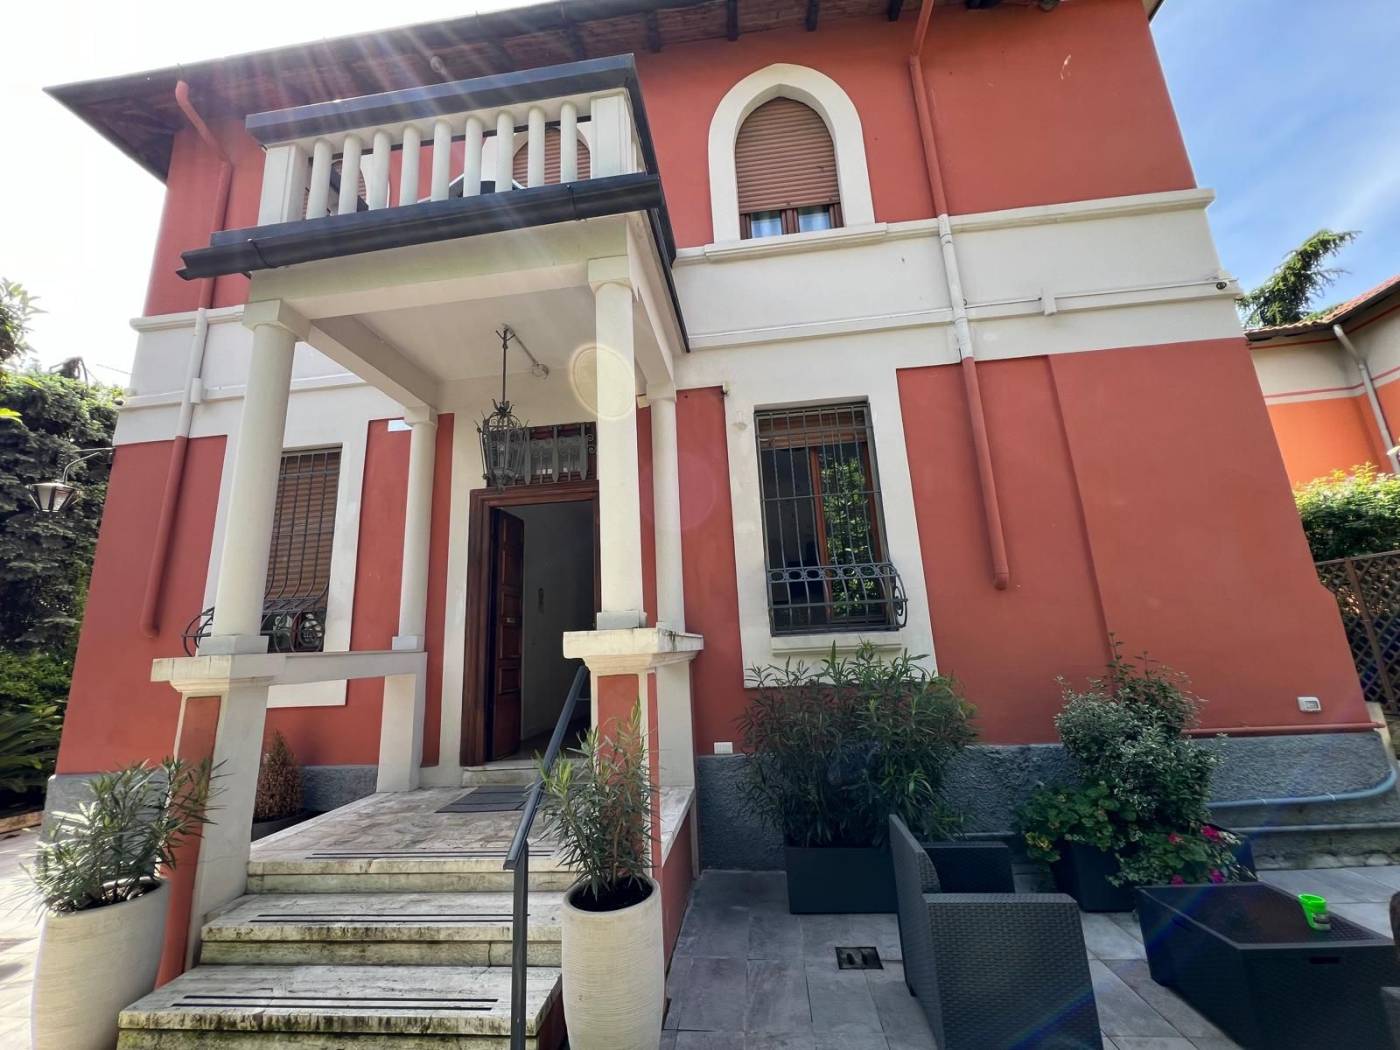 Milano - Via Budua 3, con accesso privato, proponiamo in vendita Villa Singola Unifamiliare con giardino privato. La villa si compone da piano 